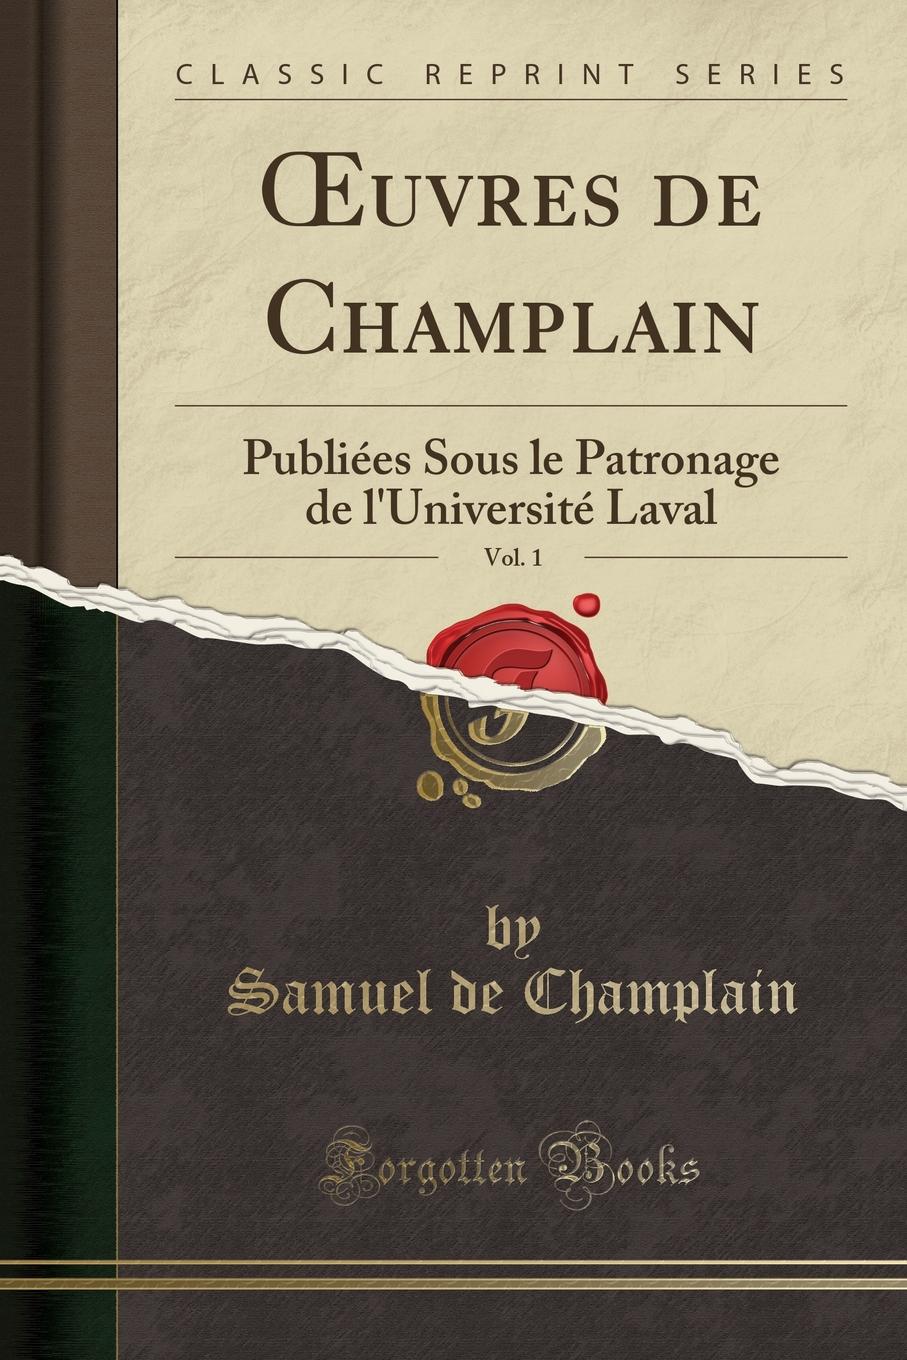 OEuvres de Champlain, Vol. 1. Publiees Sous le Patronage de l.Universite Laval (Classic Reprint)